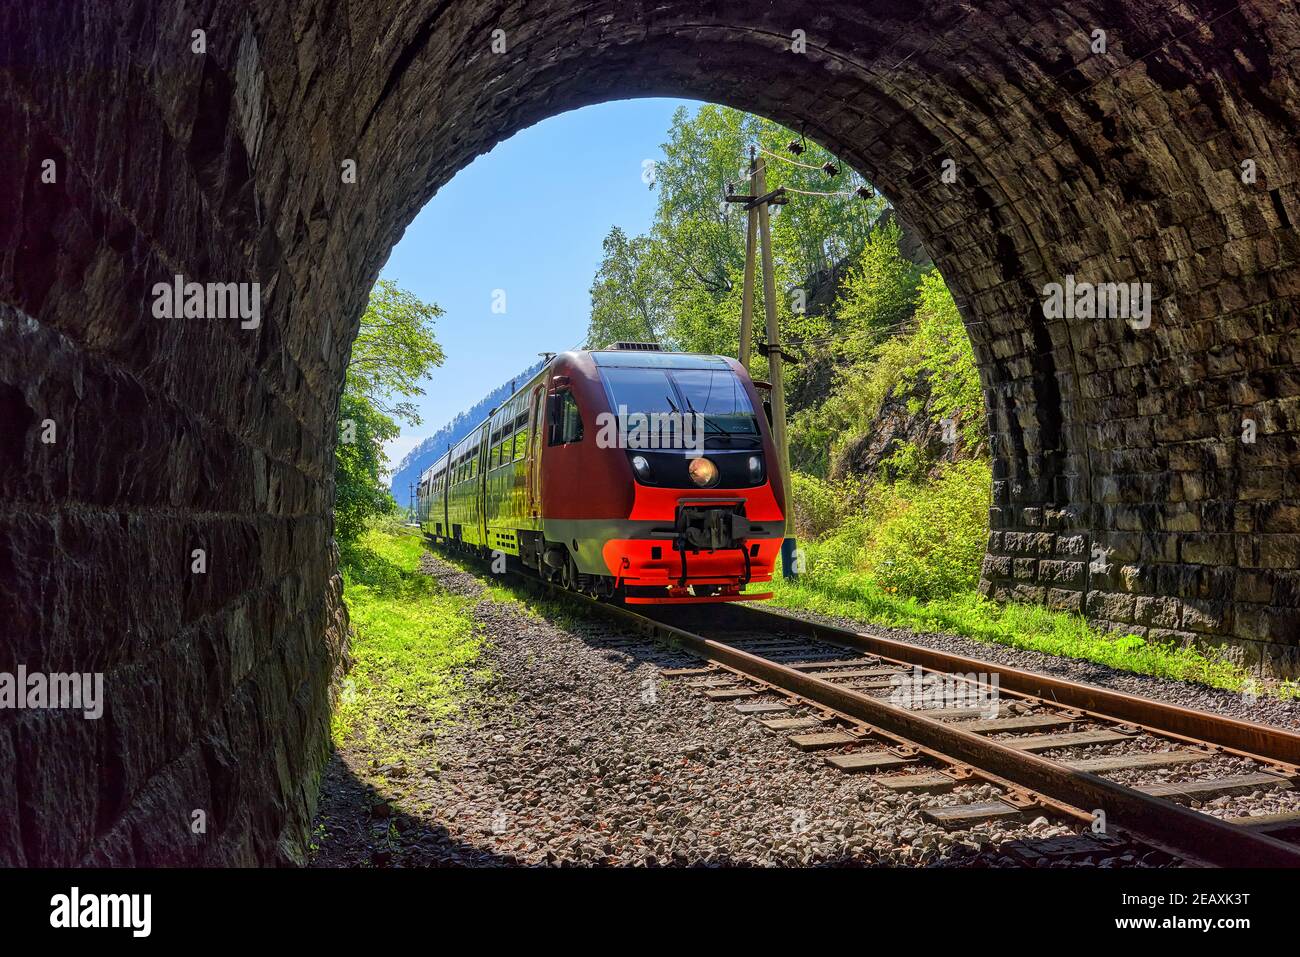 Un train de banlieue s'engage dans un tunnel. Chemin de fer Circum-Baikal. Région d'Irkoutsk. Sibérie orientale Banque D'Images